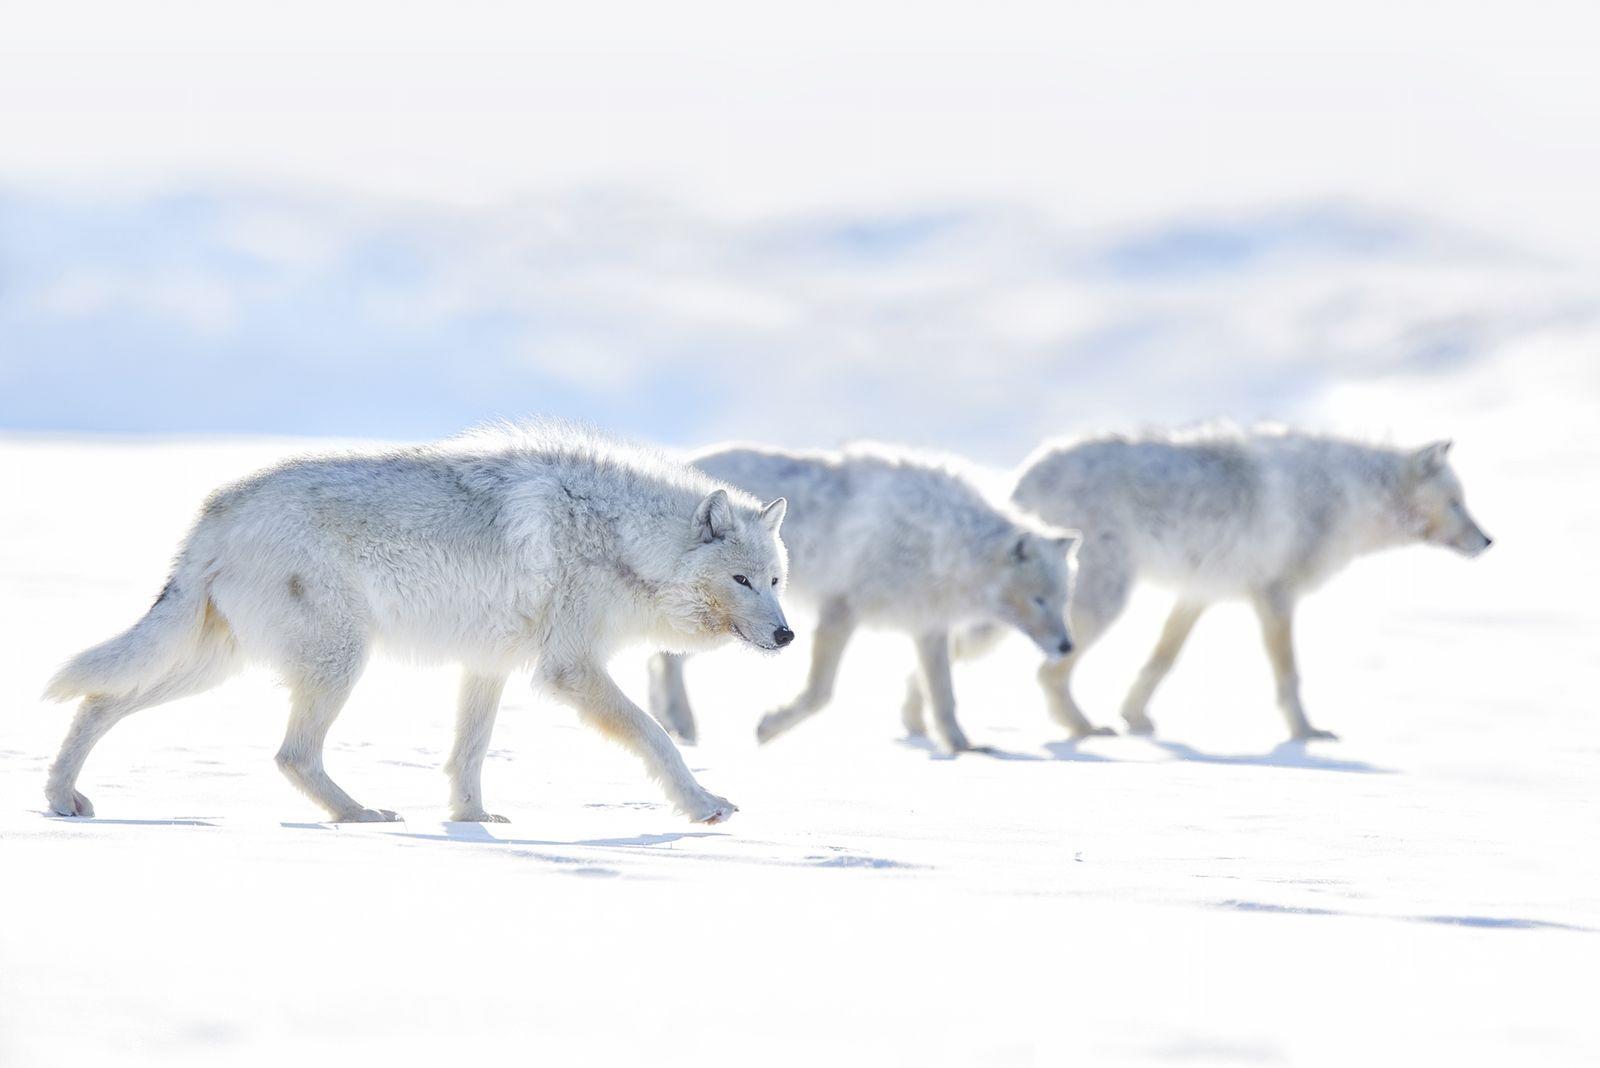  一群漫步的北极狼， EJAZ KHAN摄于加拿大努勒维特。 